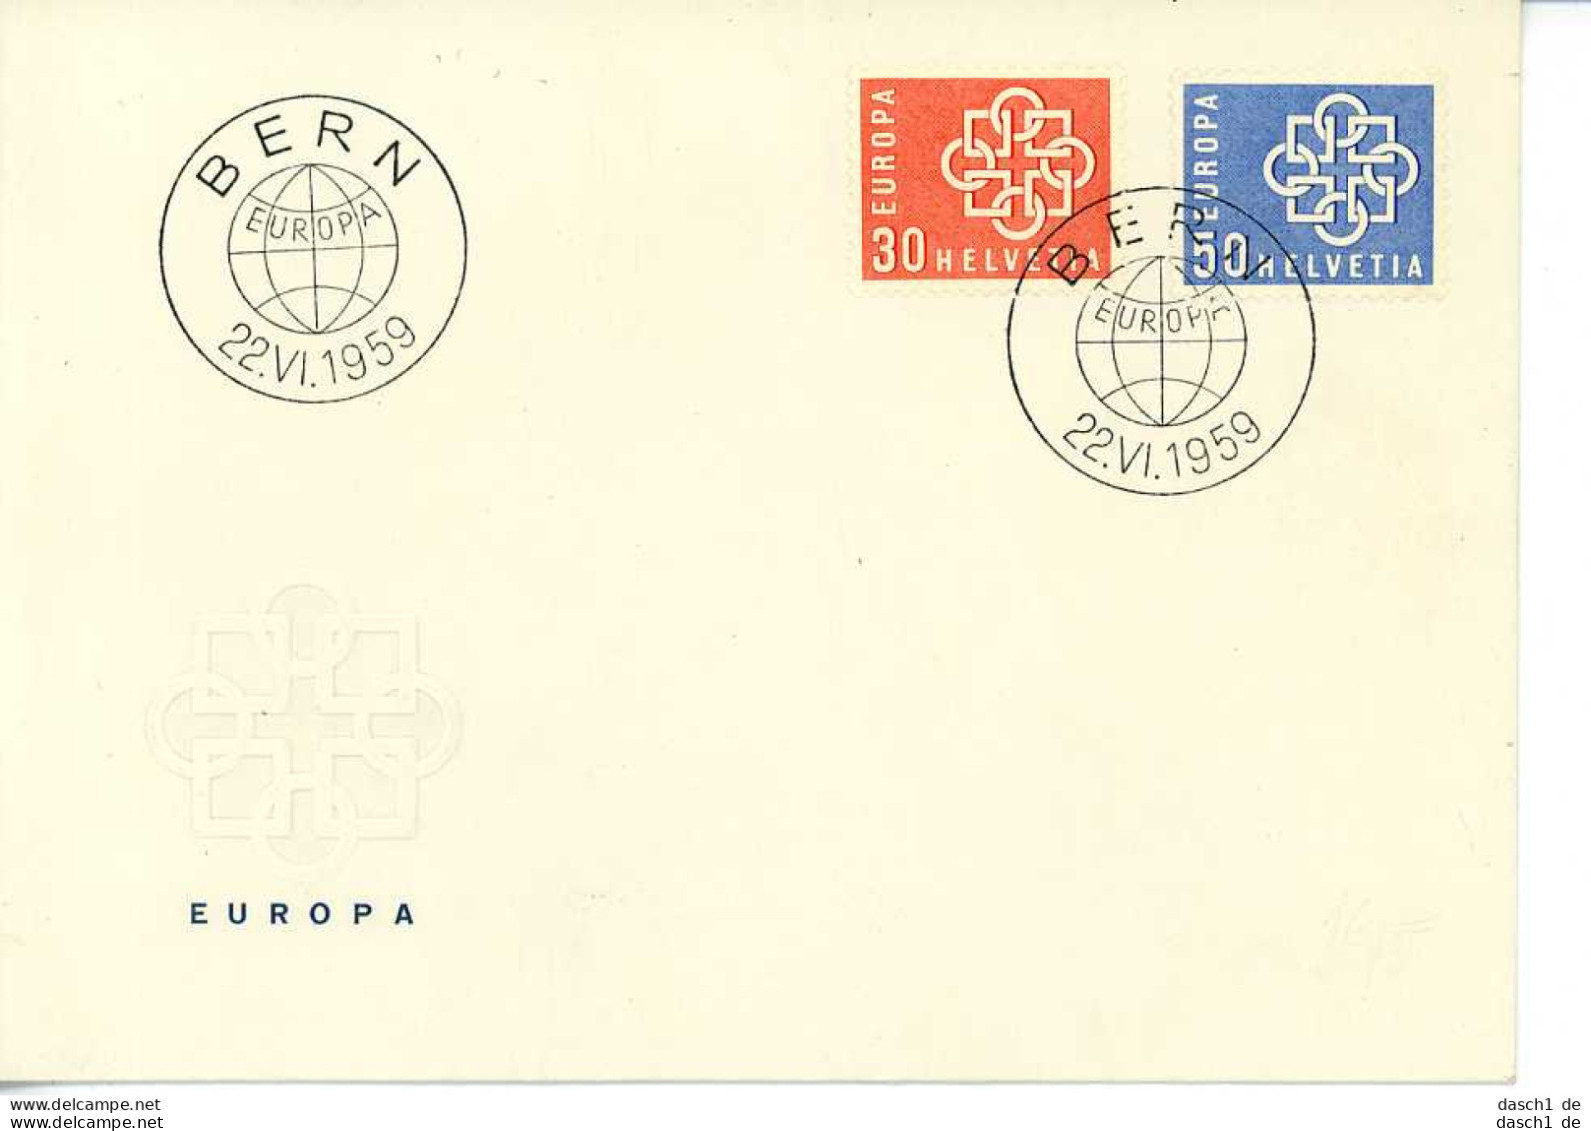 Europa, CEPT, 1959, FDC und Sonderbelege, 14 Briefe